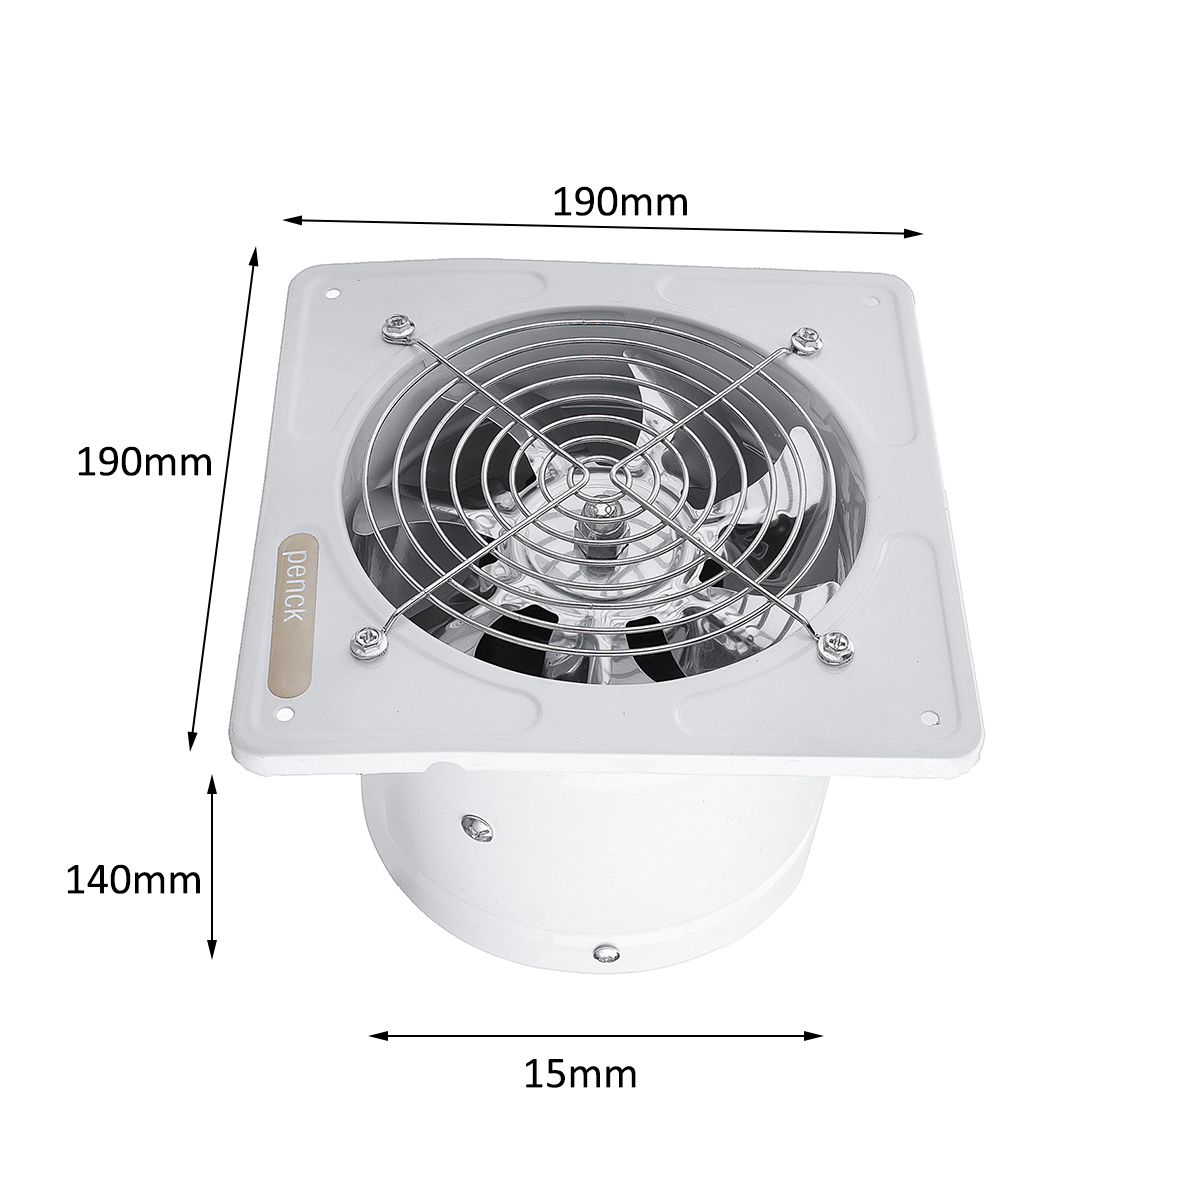 Вентиляторы вытяжные потолочные ванна. Extractor Fan 100 вентилятор бесшумный. Вентилятор Extractor Fan потолочный. Вентилятор вытяжной 220в. Ip68 вентилятор потолочный вытяжной.